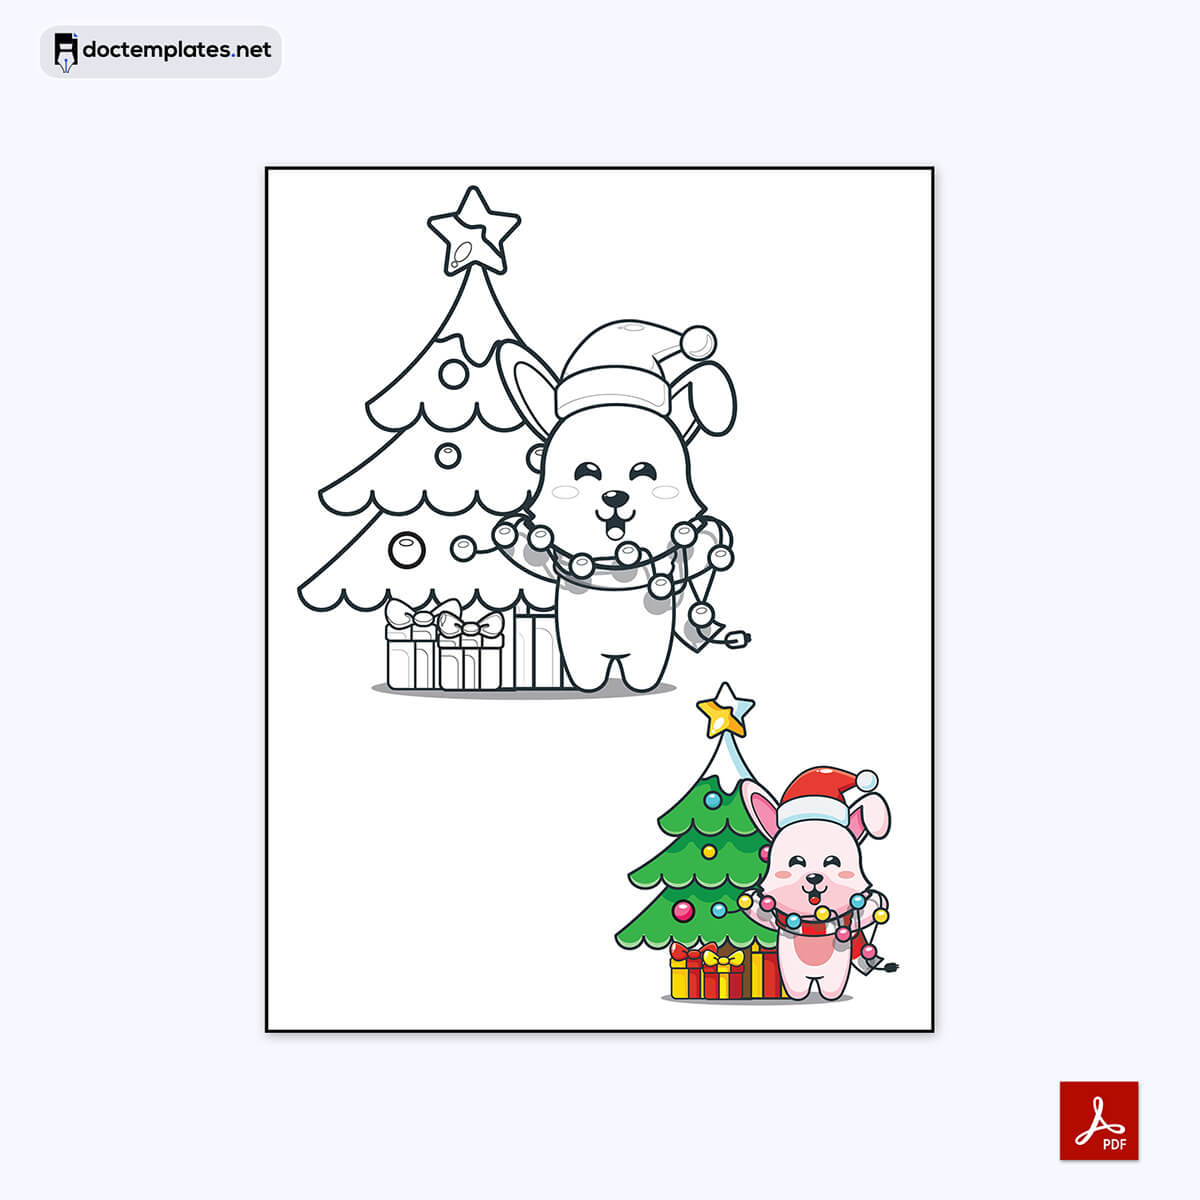 Image of Free printable Christmas shapes
Free printable Christmas shapes
